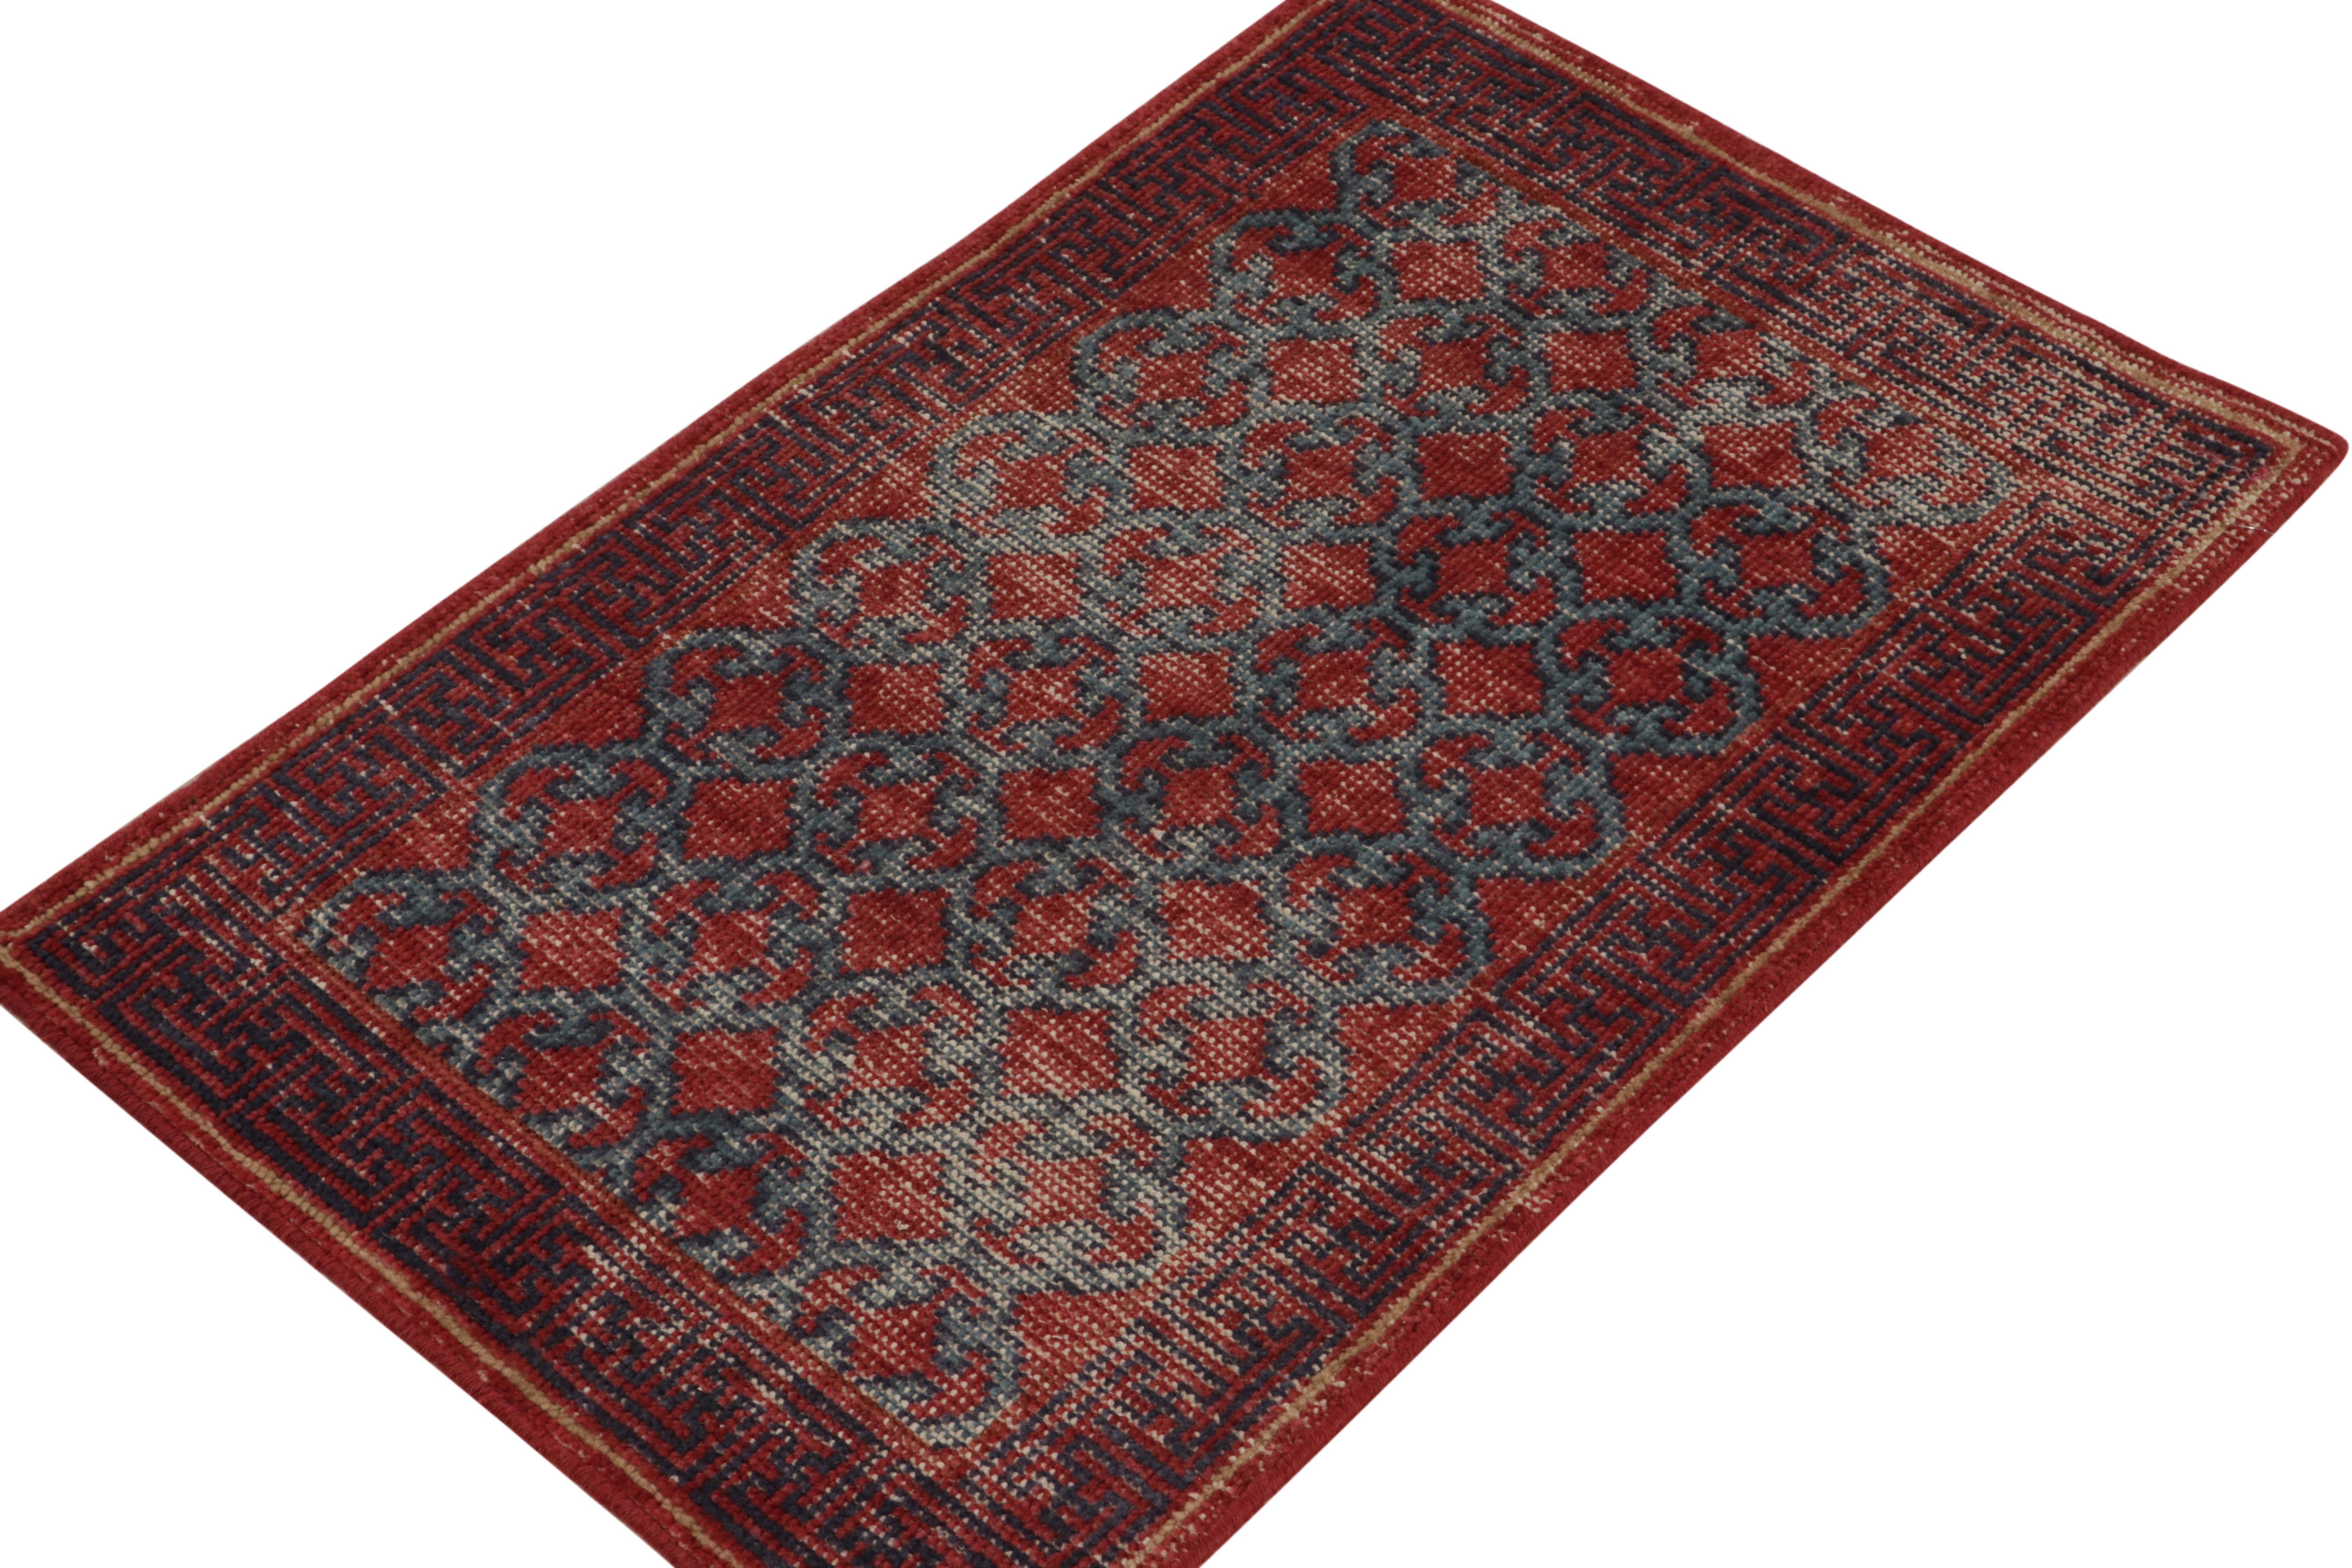 Un élégant tapis 2x3 en laine nouée à la main de la collection Homage de Rug & Kilim - une encyclopédie texturale audacieuse de motifs et de styles célèbres. 

Ce style classique s'inspire des anciens tapis Khotan Samarkand du début du XXe siècle,